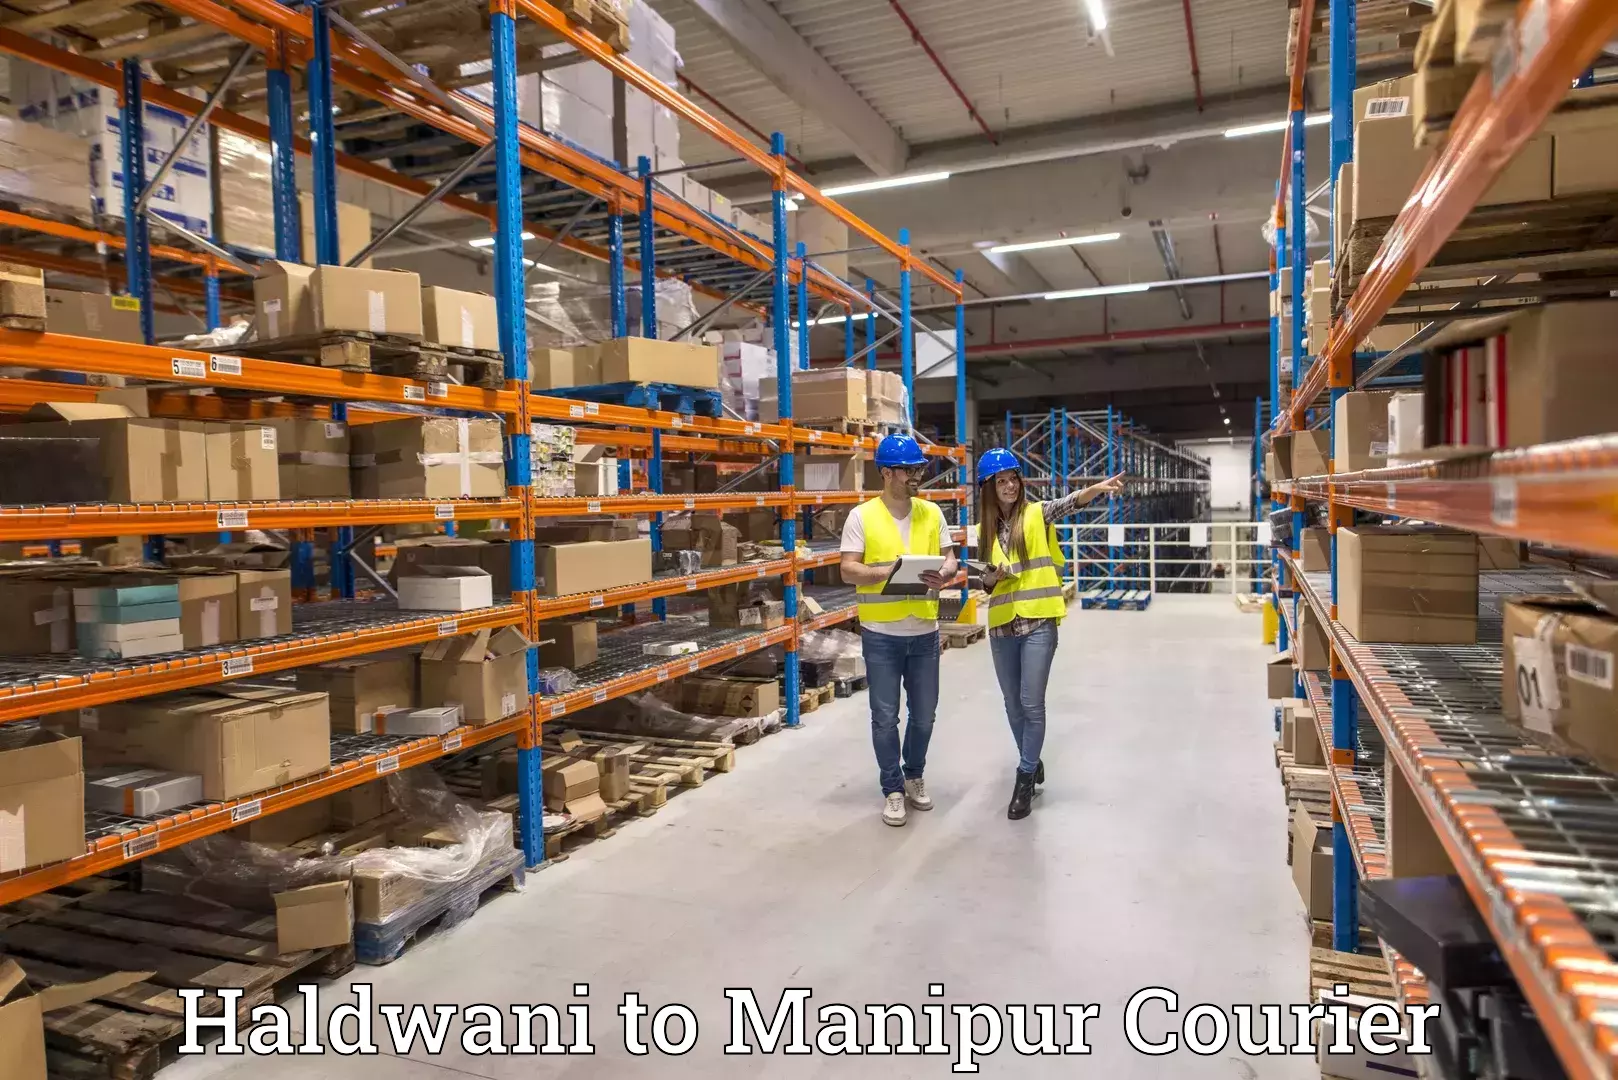 Express logistics providers Haldwani to IIIT Senapati